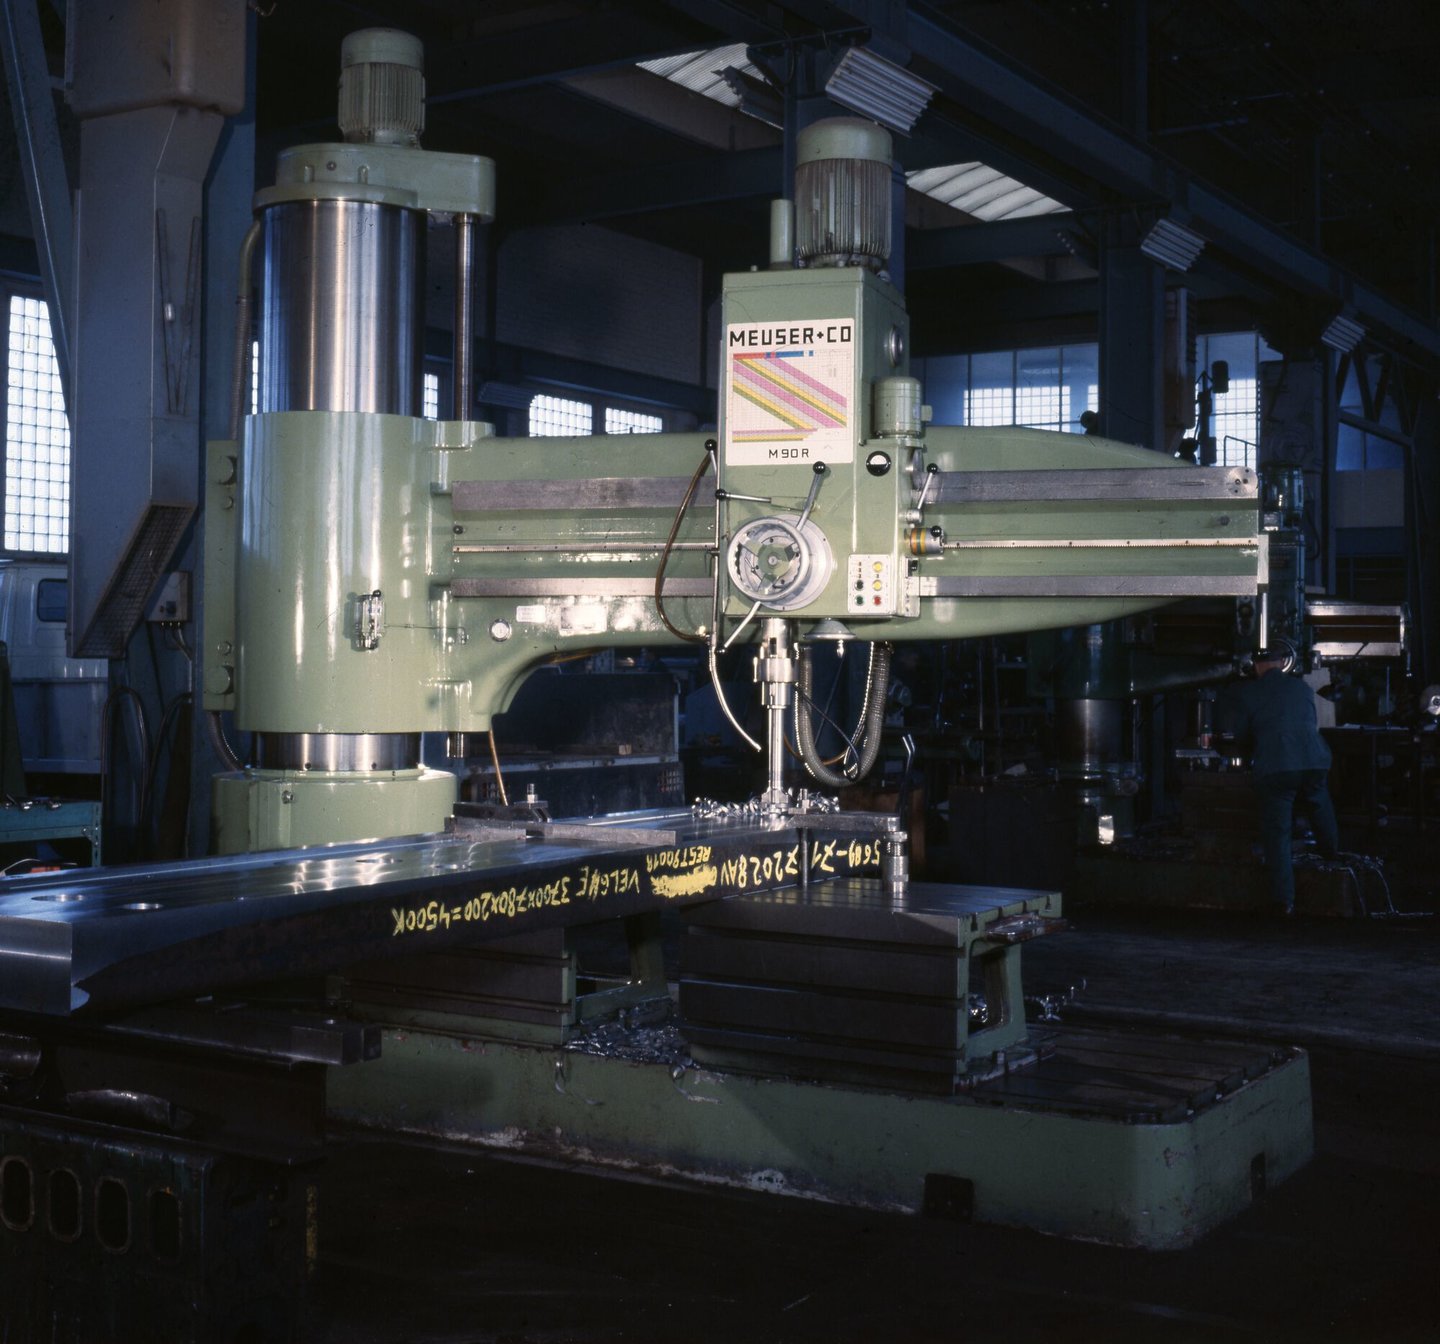 Radiaalboormachine in machinewerkplaats van Gentse Metaalwerken in Gent